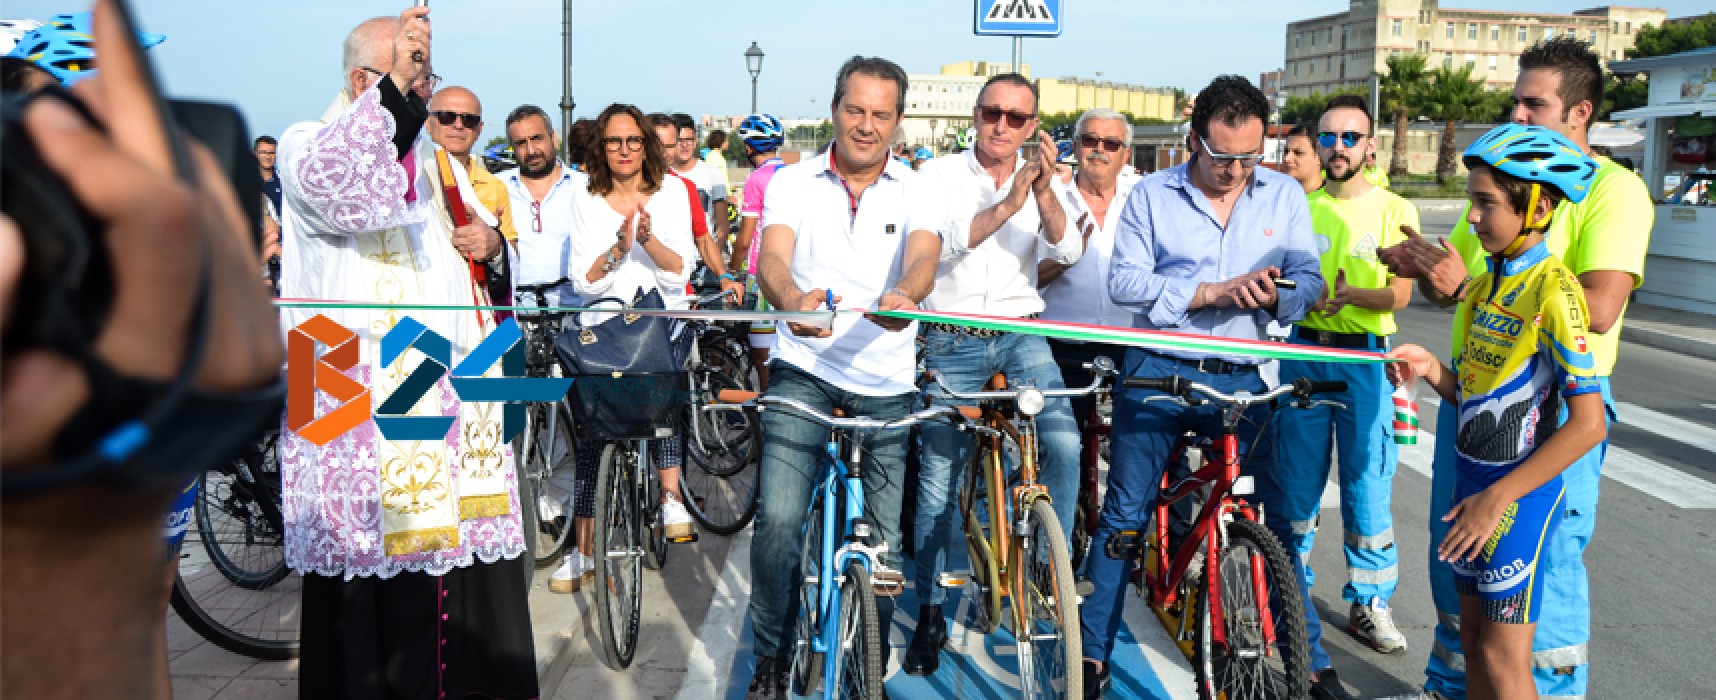 Inaugurata la pista ciclabile, Spina: “Vero progetto di mobilità sostenibile” / FOTO